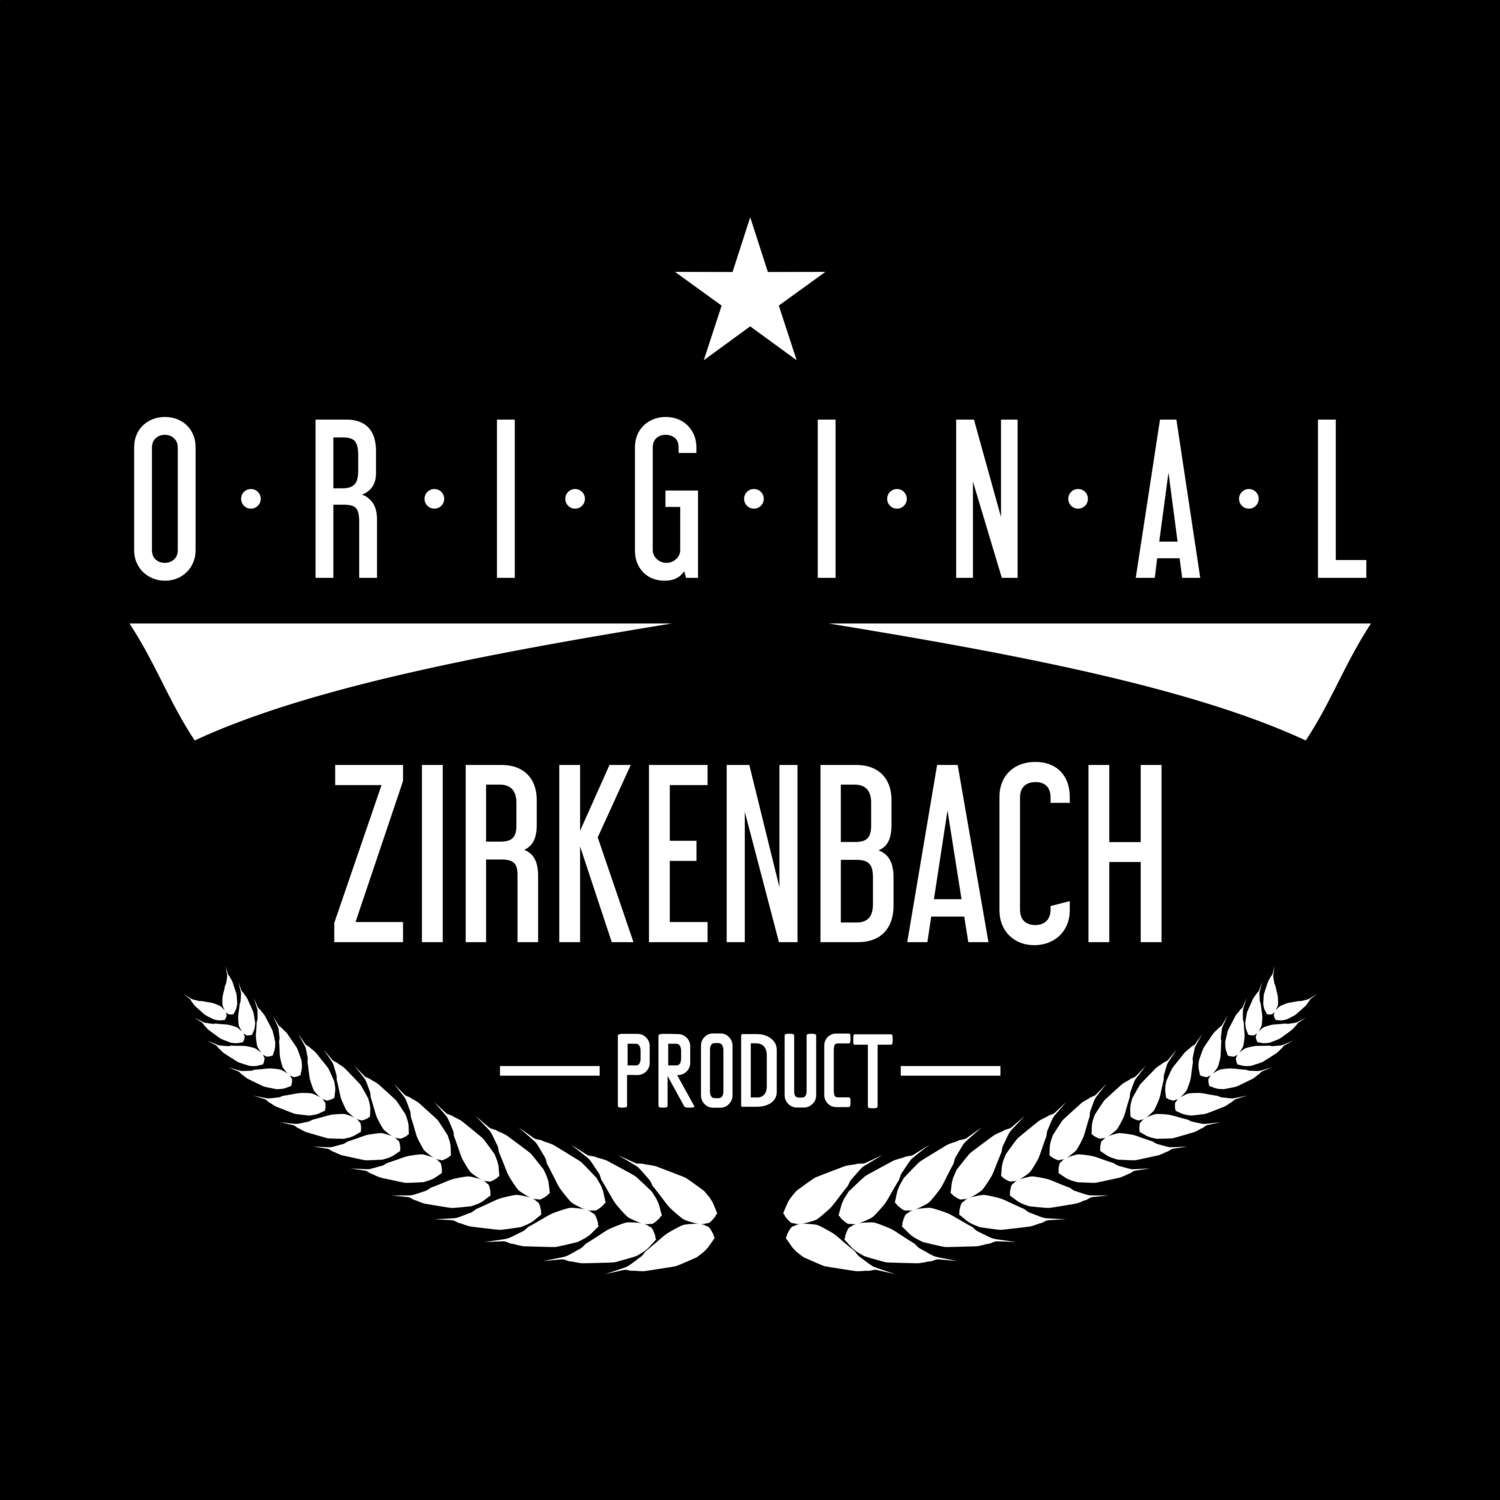 Zirkenbach T-Shirt »Original Product«